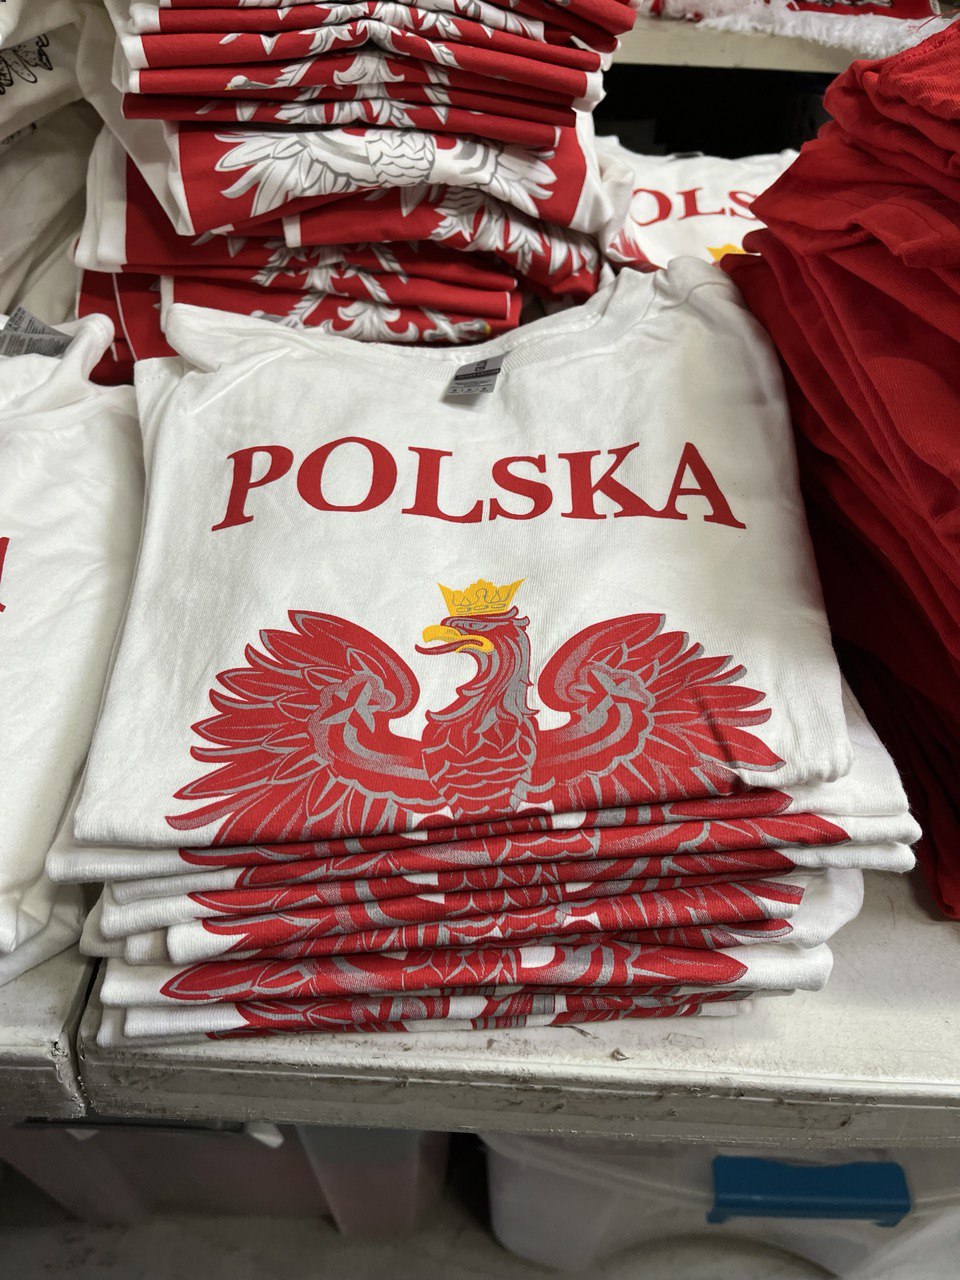 White T-Shirt Polska Eagle Polish Emblem Distressed Eagle